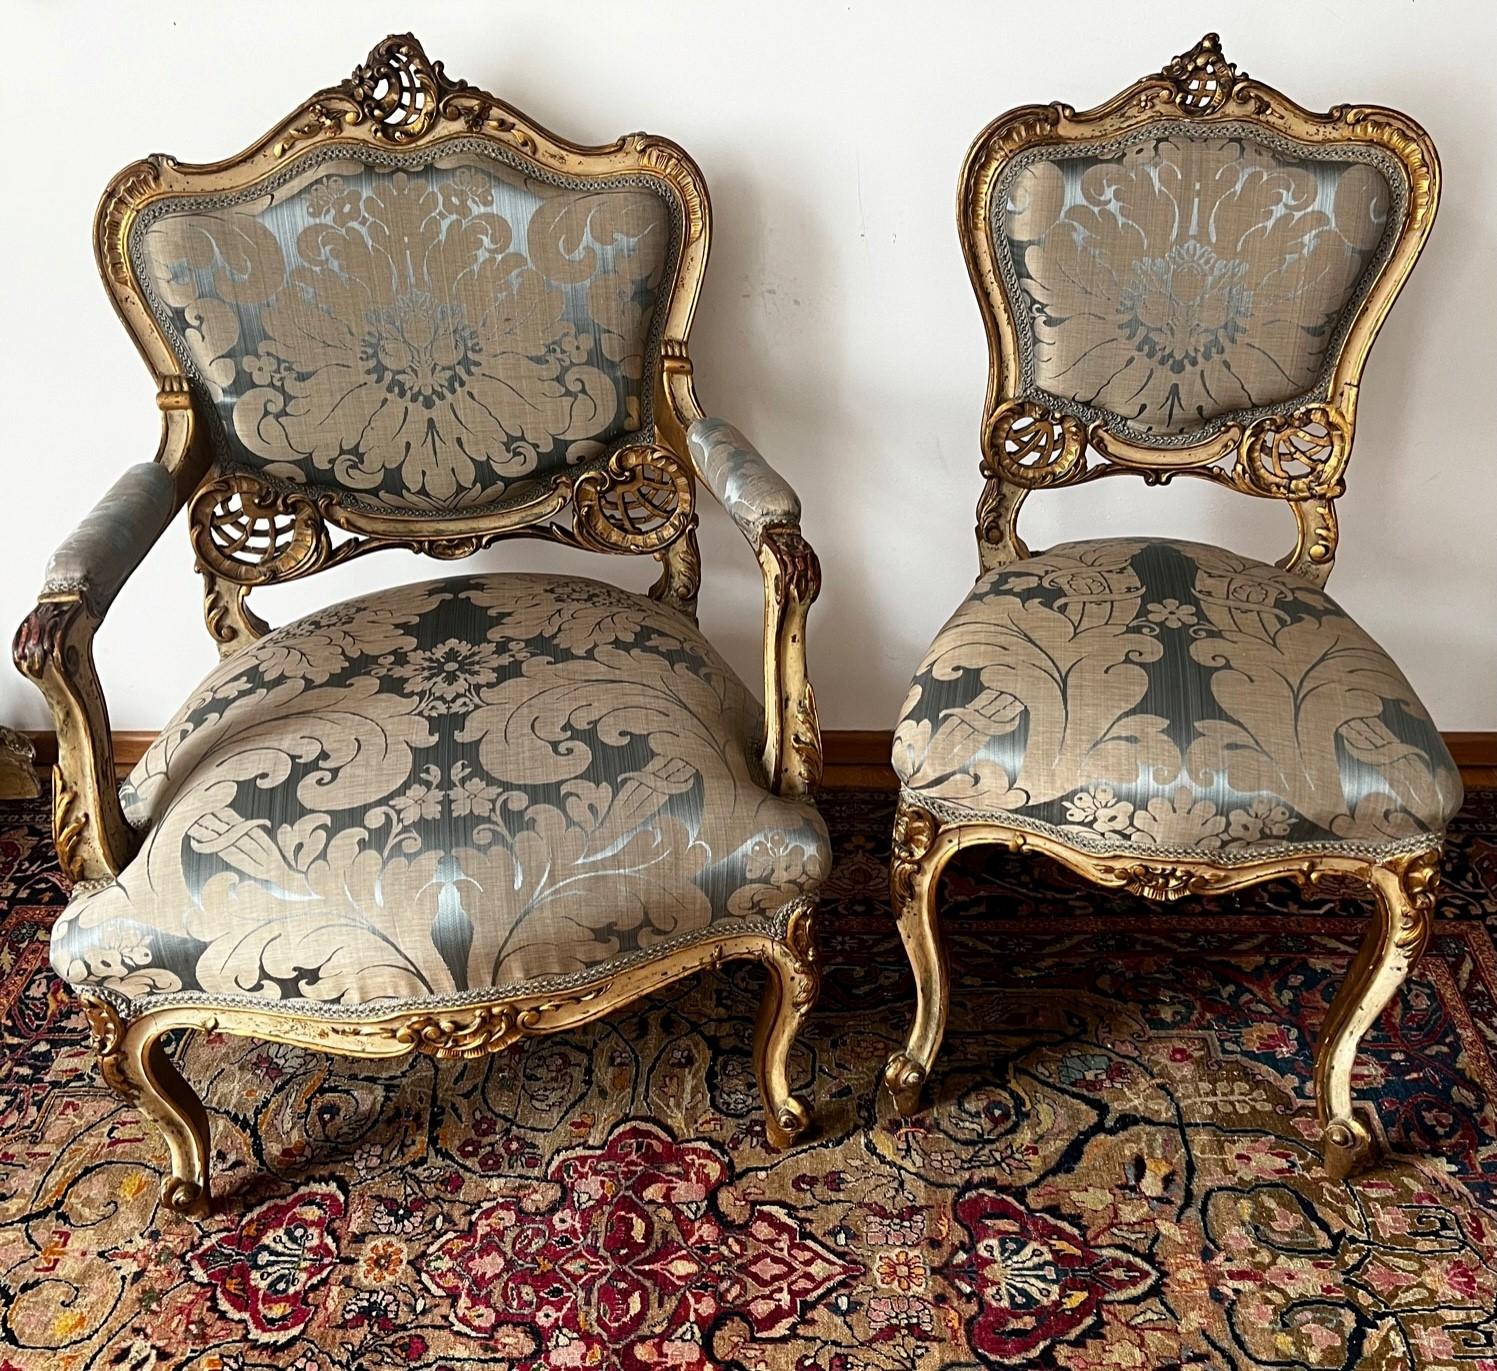 Extraordinaire et exquis ensemble de chaises de salon Louis XV originales dorées à l'or fin avec des bords en bois courbés, des surfaces sculptées de manière complexe et une patine verte grise. Un fauteuil et une chaise de salon pour dames sont